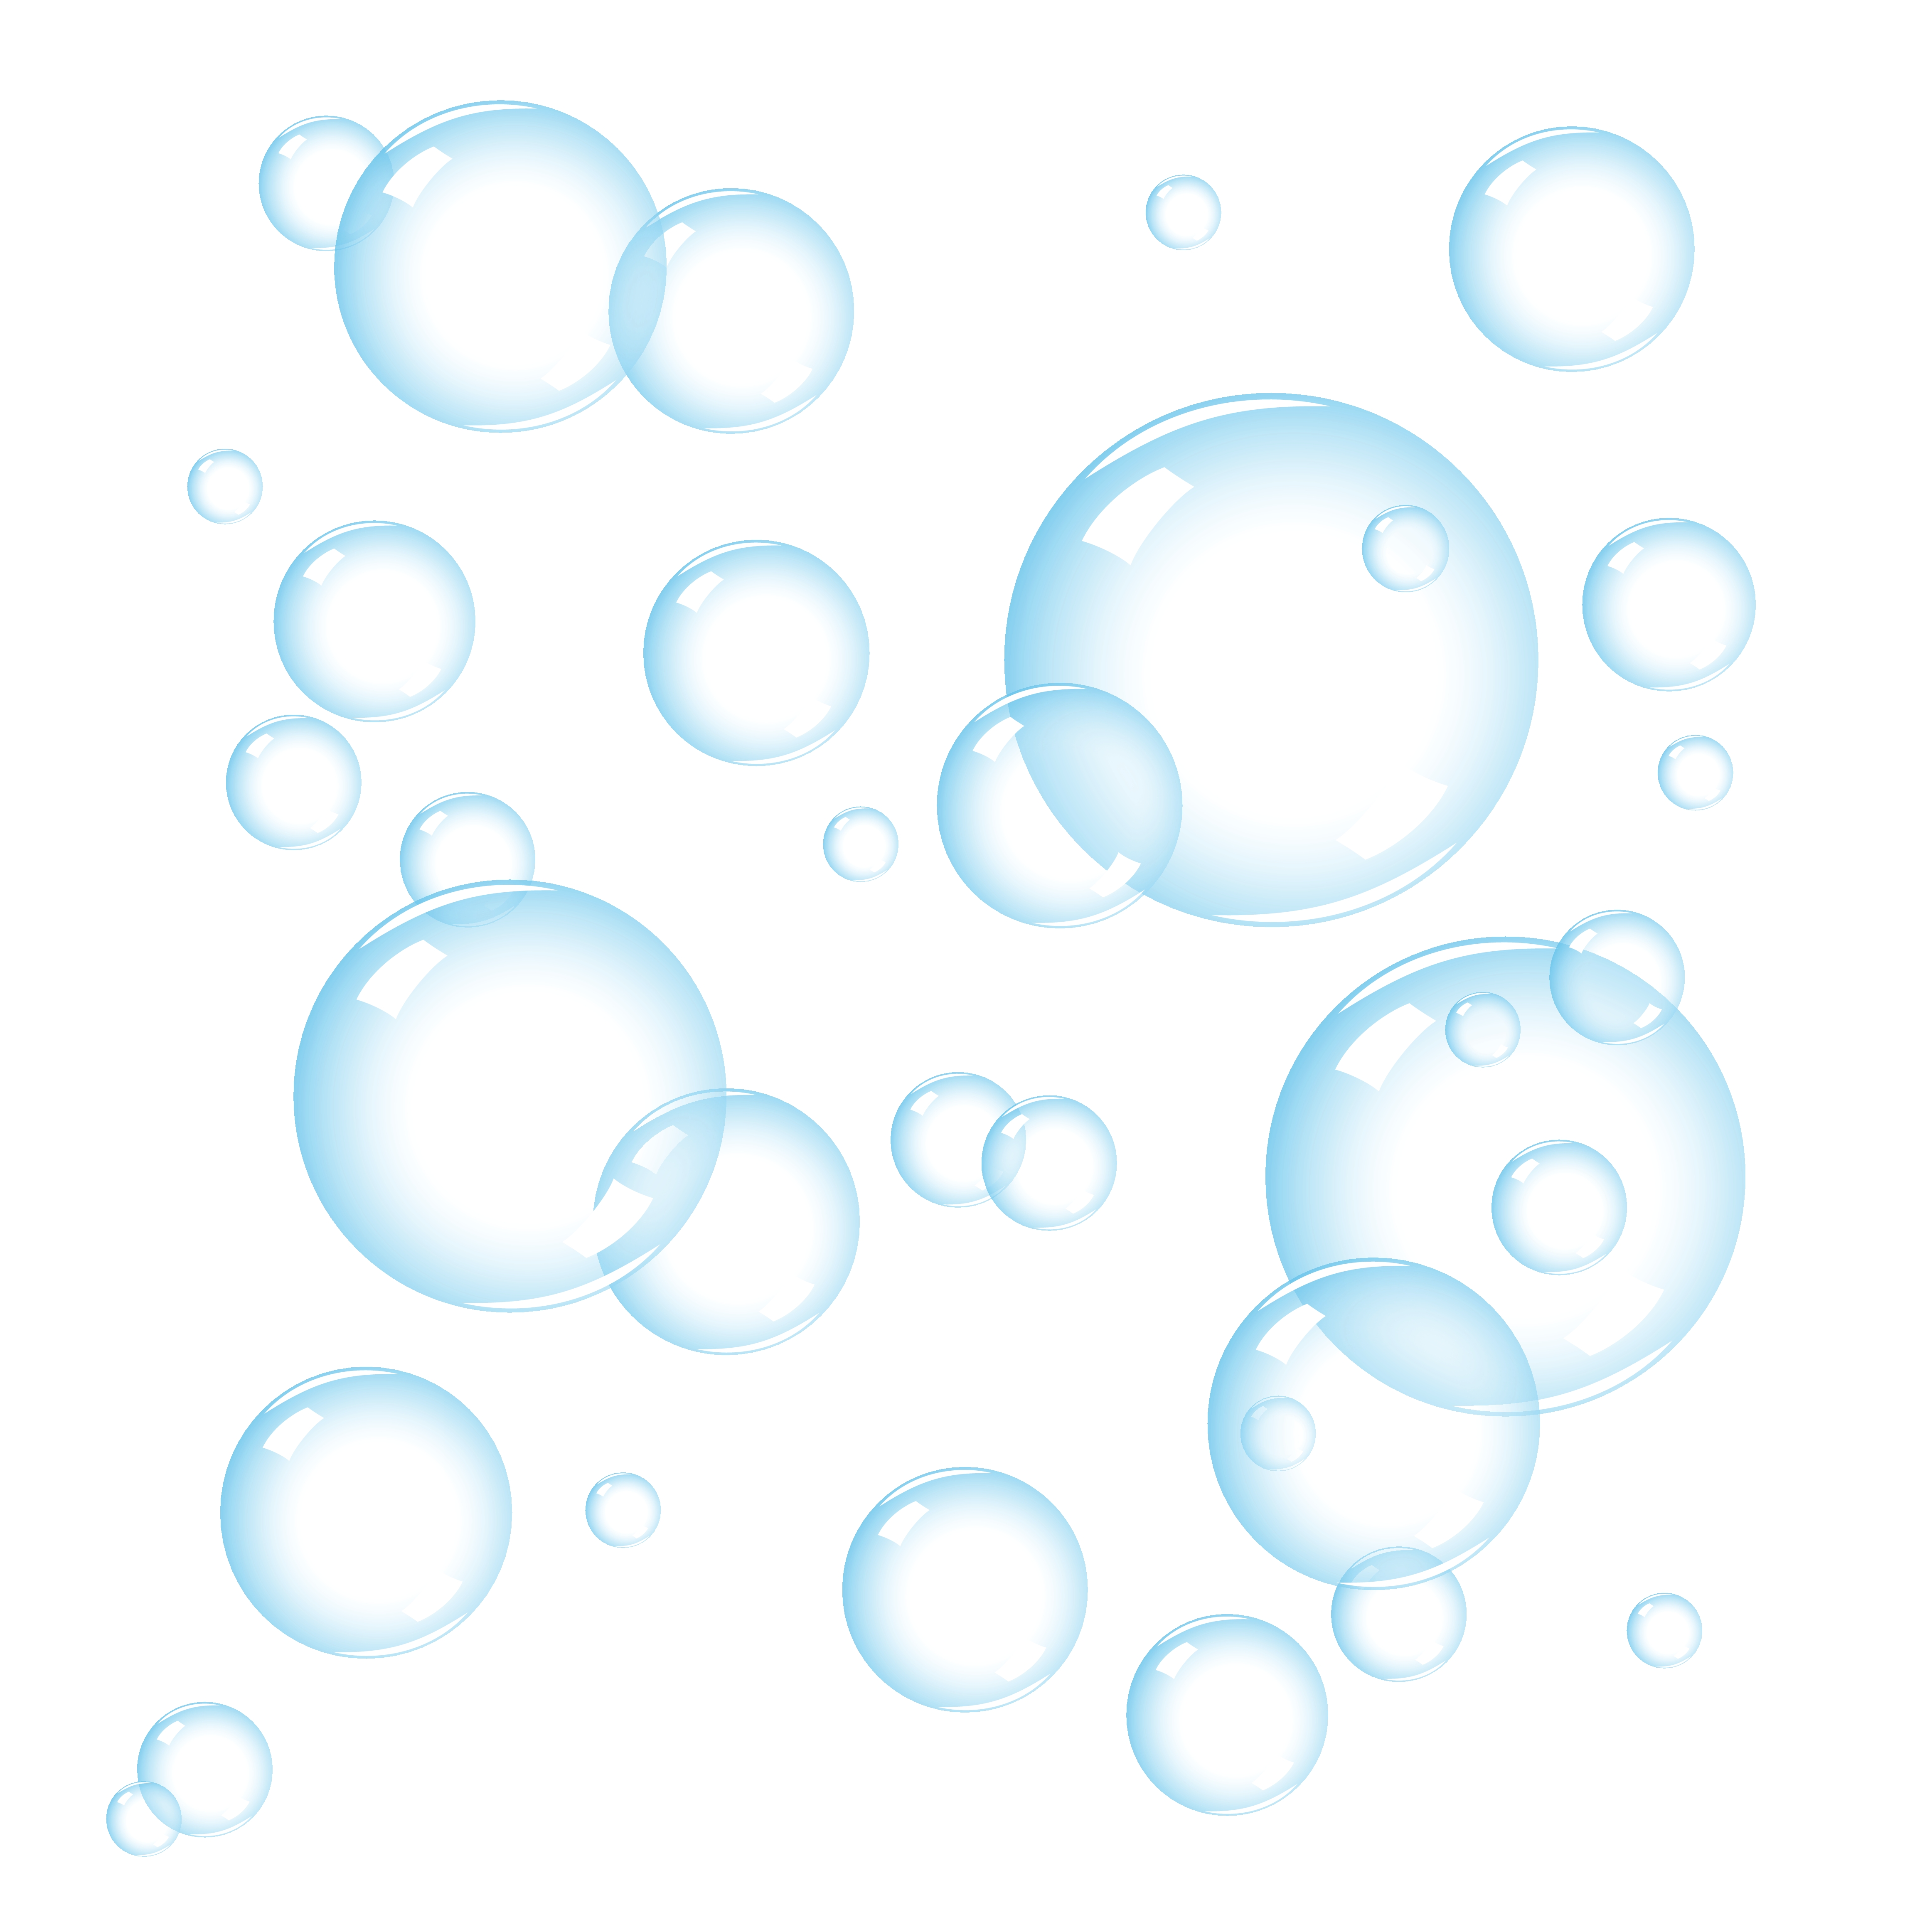 Bubbles #18